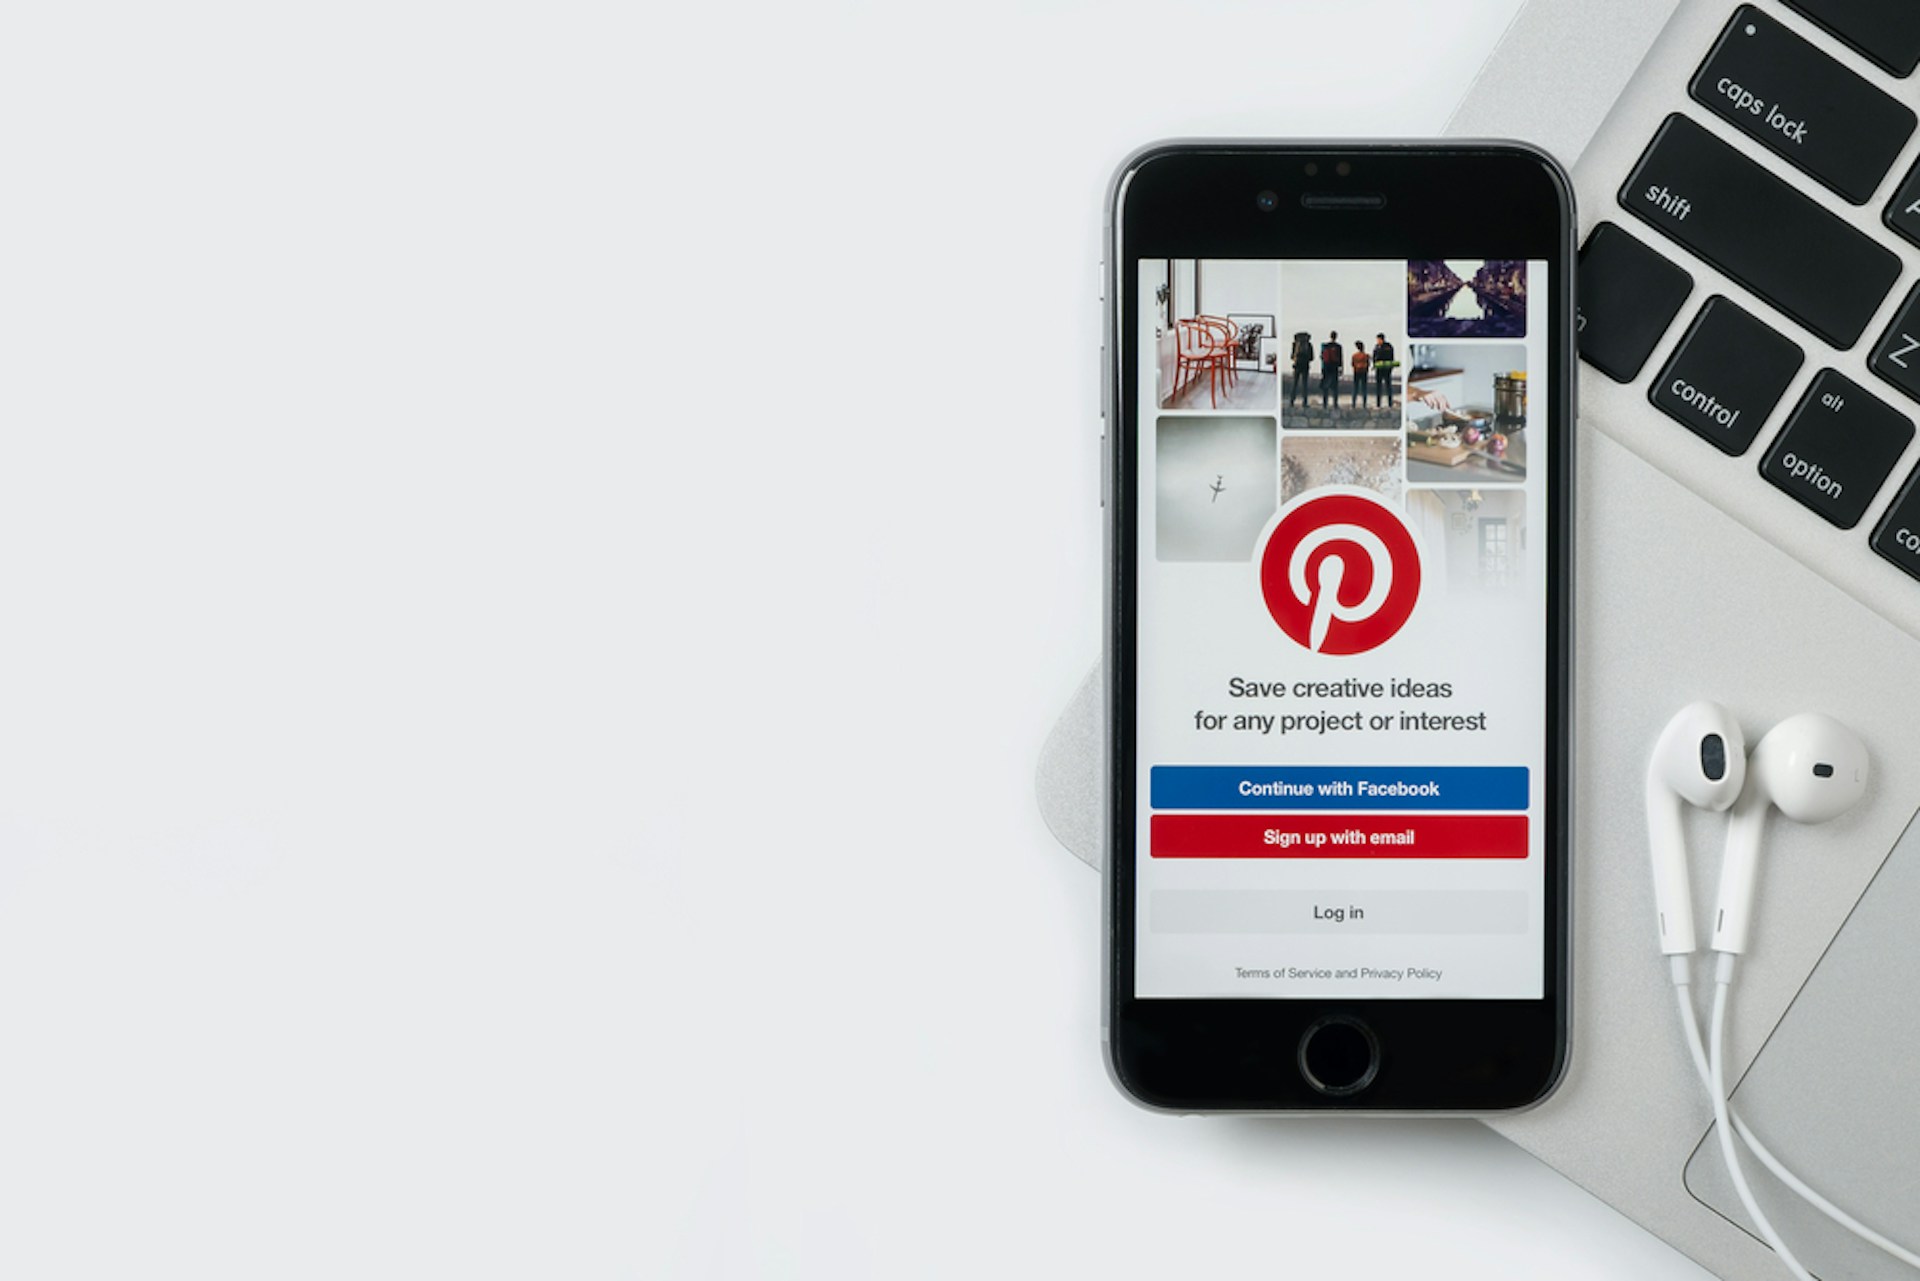 Un smartphone affichant la page de connexion Pinterest est posé sur un ordinateur portable à côté duquel on apperçoit des écouteurs